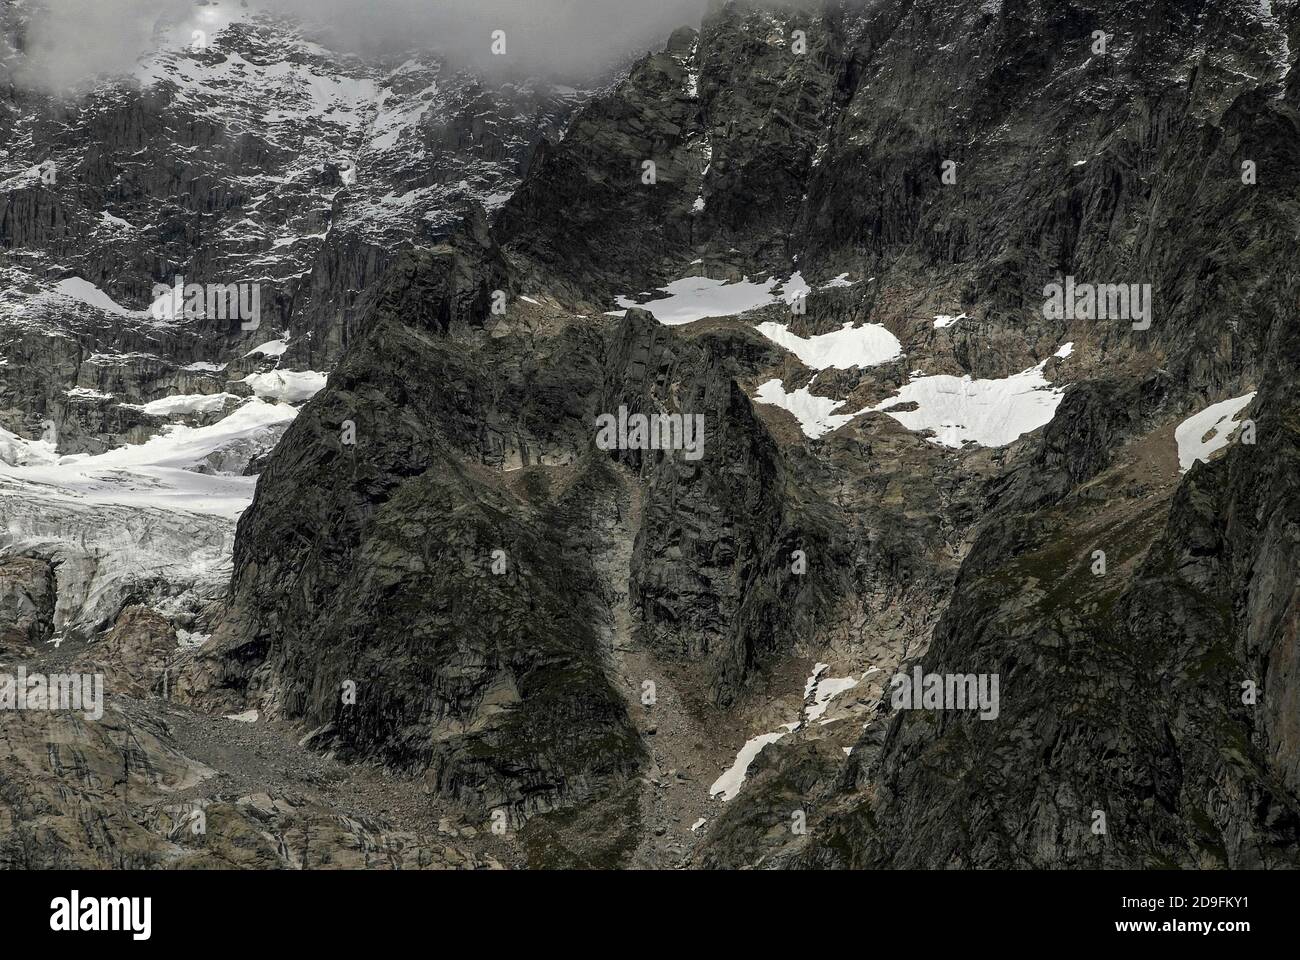 Im August, Monate vor dem Beginn des alpinen Winters, bleiben in den Mulden in der Nähe der großen Gletscher, die sich an den zerklüfteten Hängen des Mont Blanc / Monte Bianco-Massivs abschneien, nur wenige Stellen verschneit. Während die schroffe Burg-ähnliche Formation in der Mitte dieses Blickes fast frei von Schnee und Eis ist. Aufnahme aus der Nähe von Entrèves, Courmayeur, Aostatal, Italien, in der Nähe des italienischen Eingangs zum 11.6 km (7.25 m) Mont-Blanc-Tunnel, der seit 1965 eine Alpenstraßenverbindung nach Frankreich bietet. Stockfoto